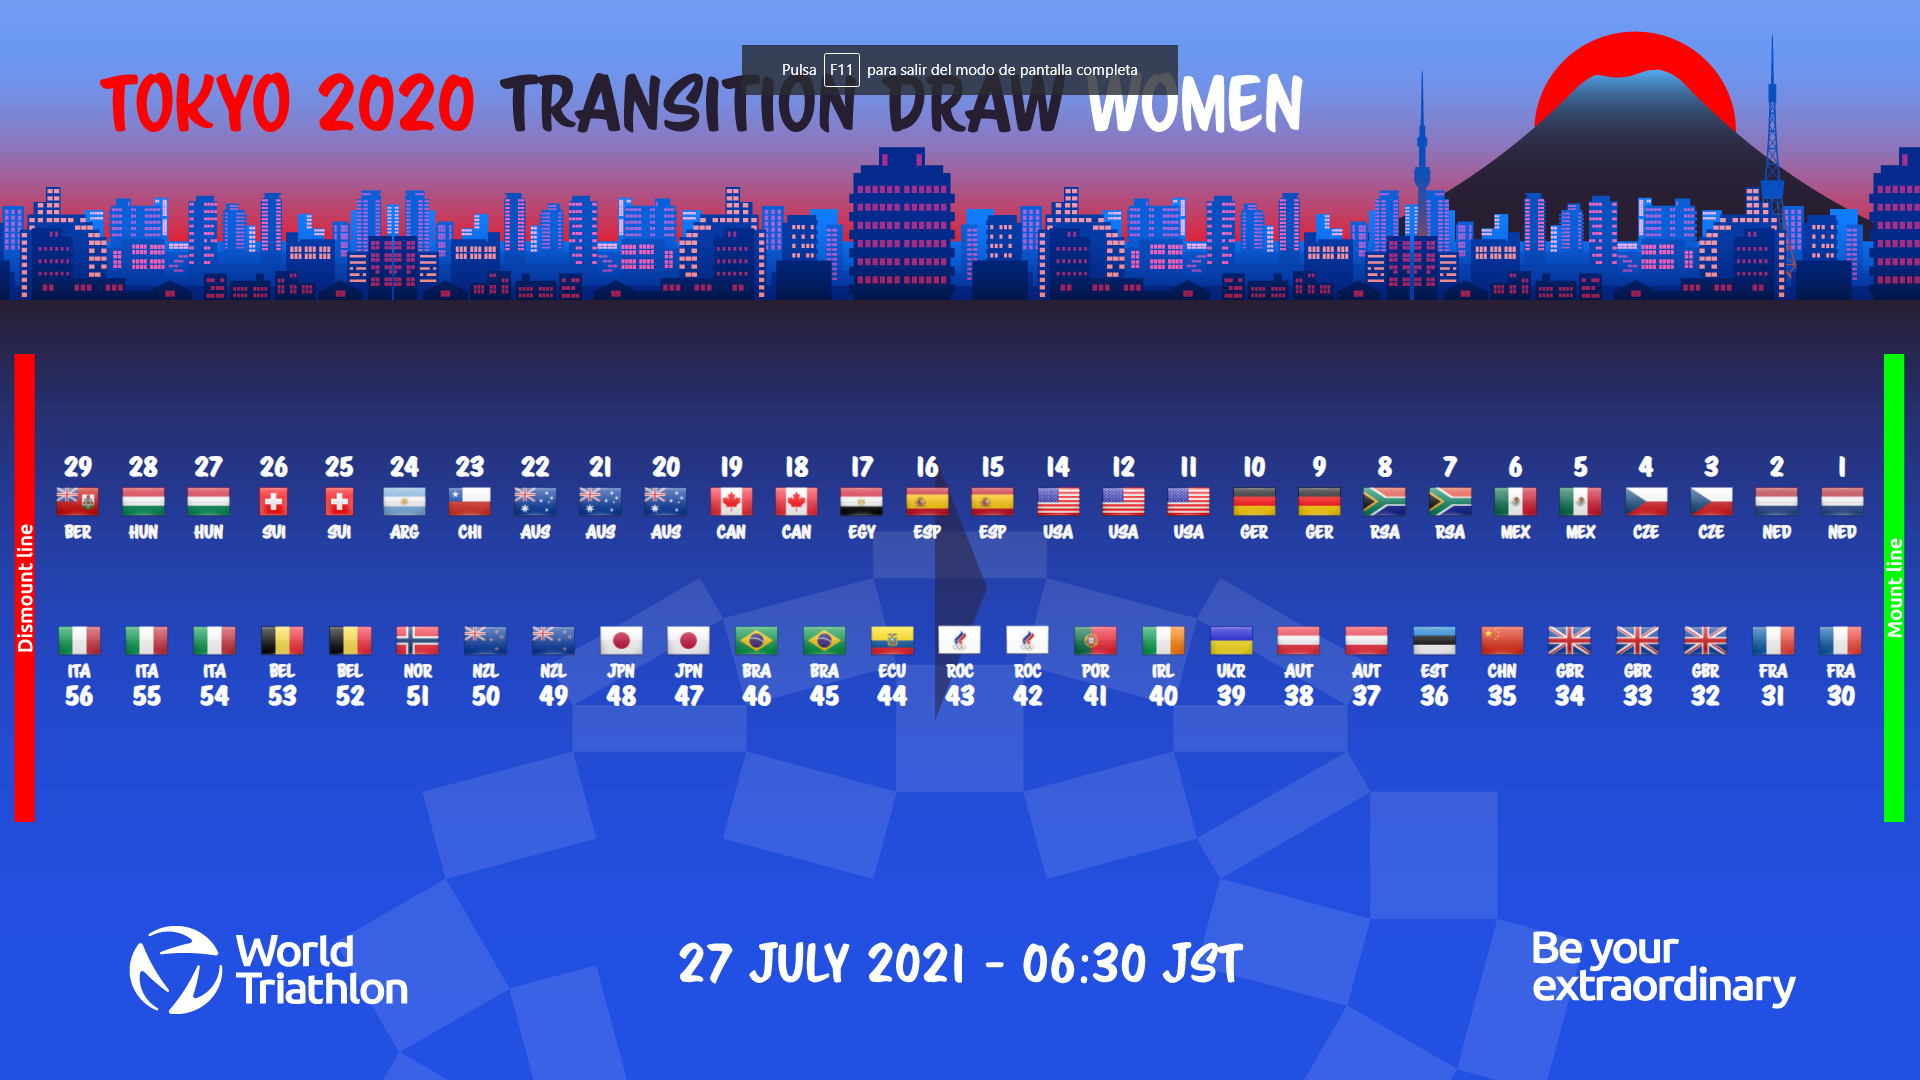 Ya se conocen los dorsales de la prueba de triatlón de los Juegos de Tokio   ,Number_allocation_female